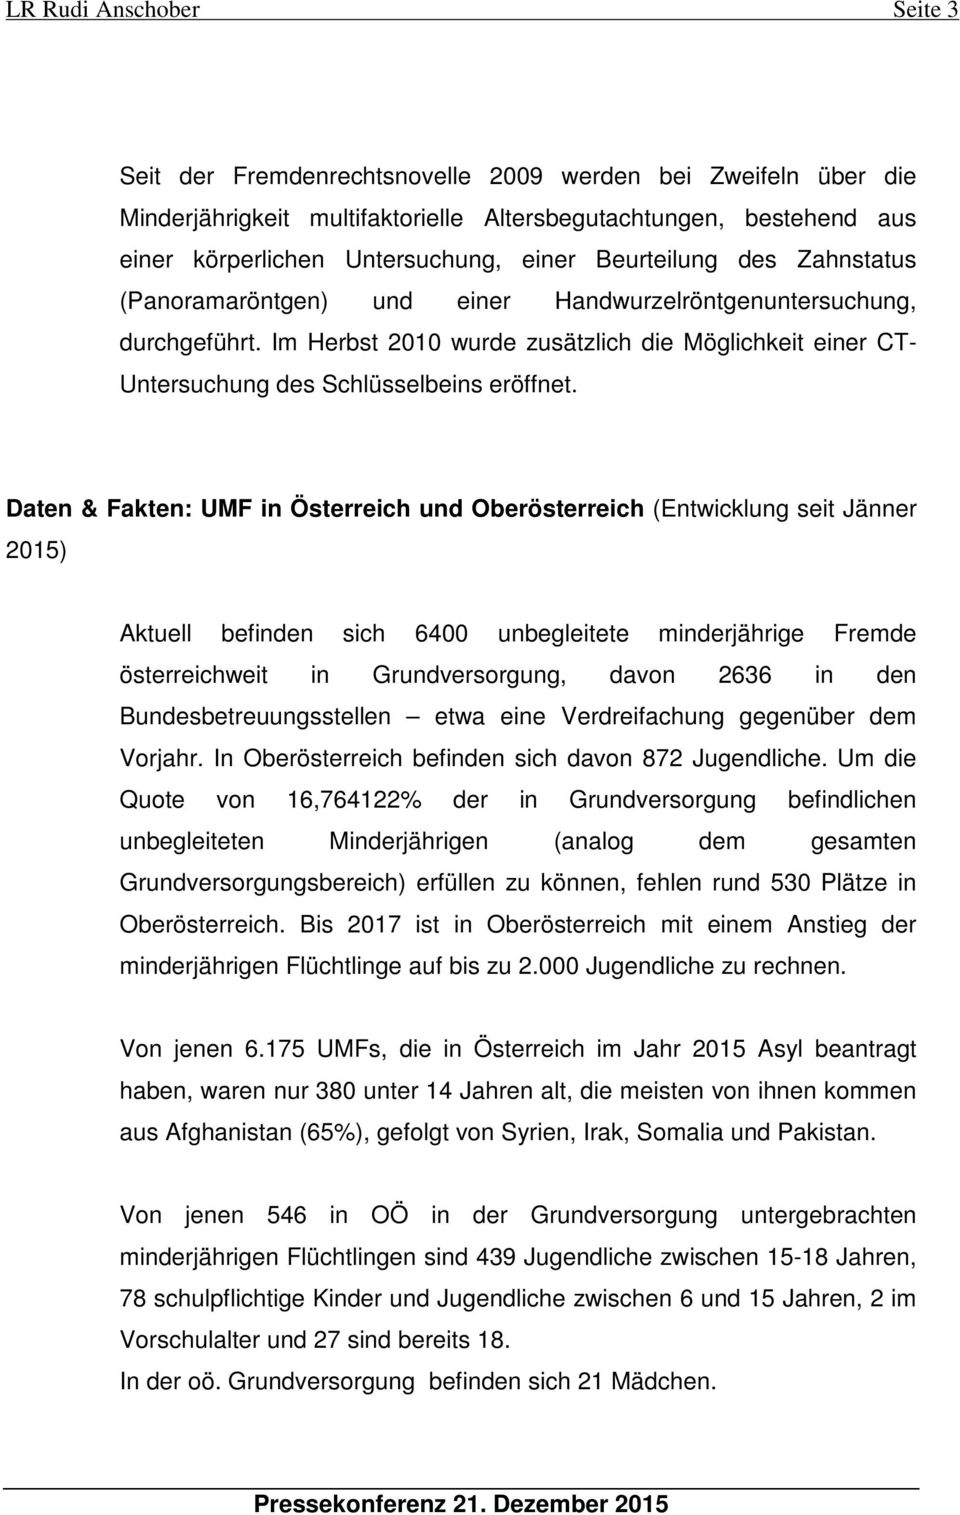 Daten & Fakten: UMF in Österreich und Oberösterreich (Entwicklung seit Jänner 2015) Aktuell befinden sich 6400 unbegleitete minderjährige Fremde österreichweit in Grundversorgung, davon 2636 in den